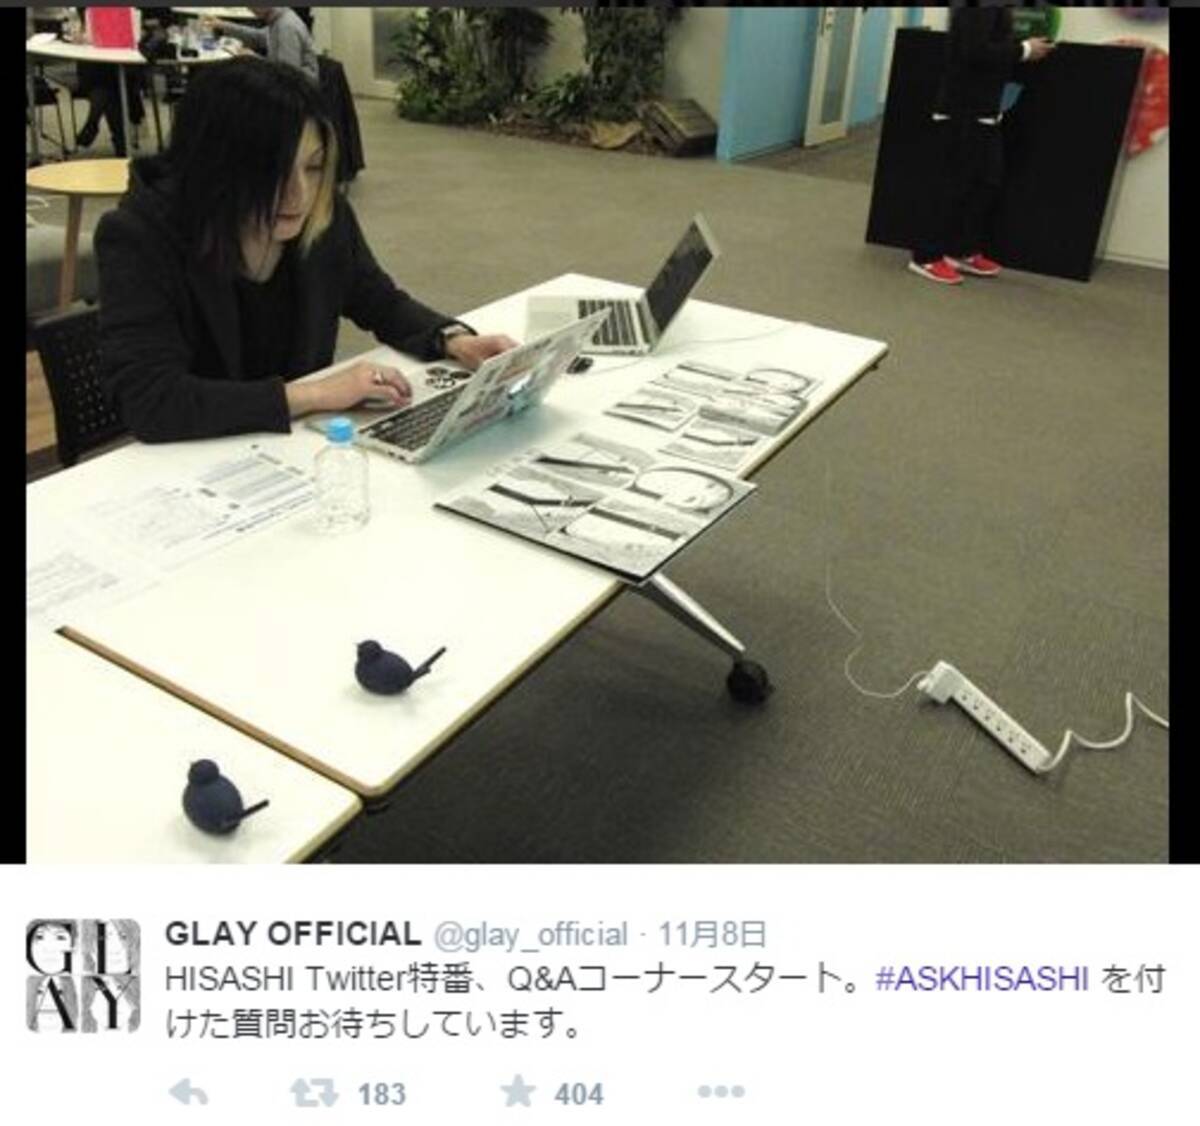 Glay Hisashiが新曲の告知で謎のツイート 私もglayを聴いて7キロ